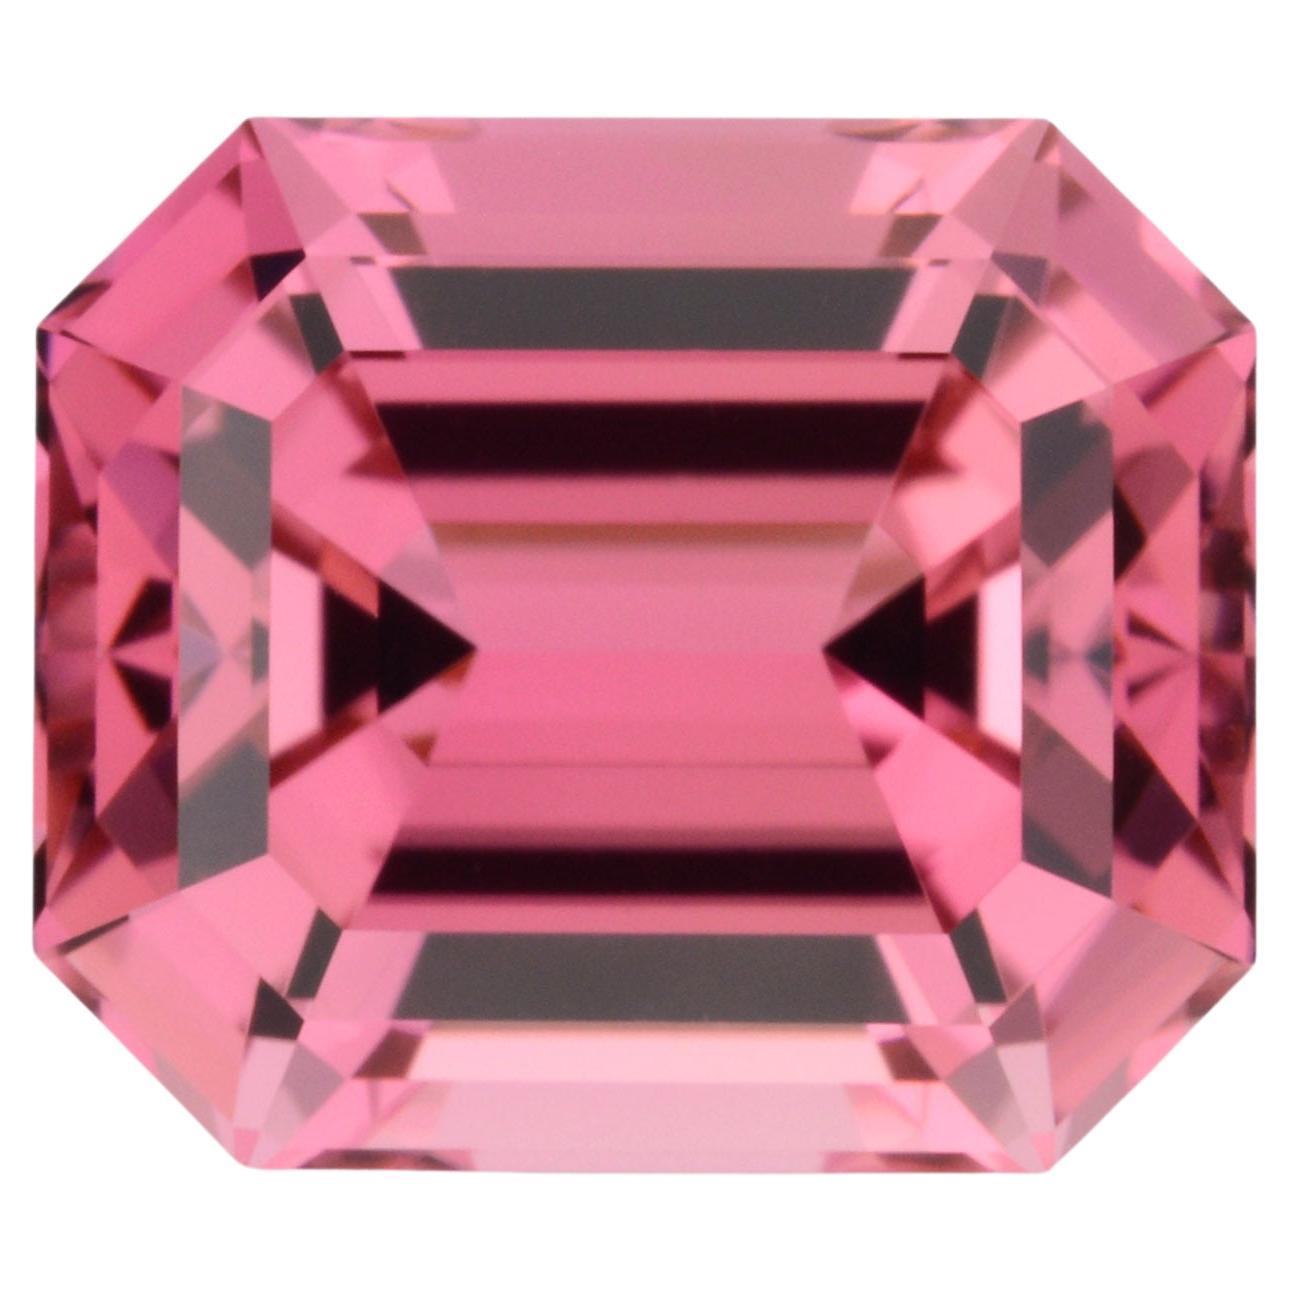 Pink Tourmaline Ring Loose Gemstone 4.15 Carat Unmounted Emerald Cut